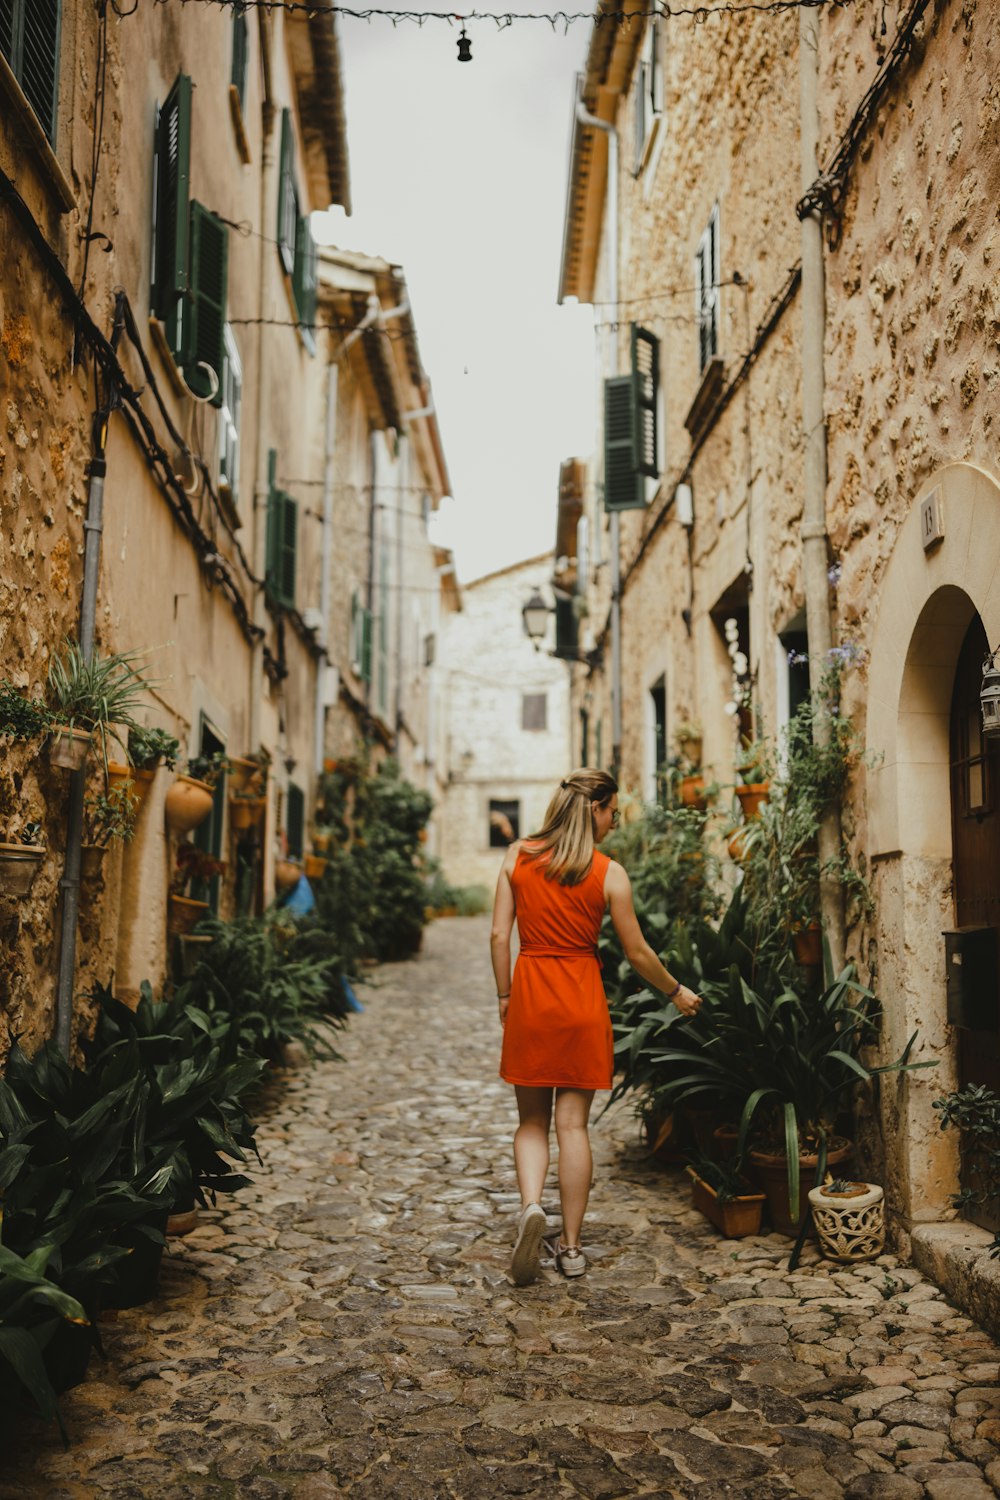 a woman in an orange dress walking down a cobblestone street